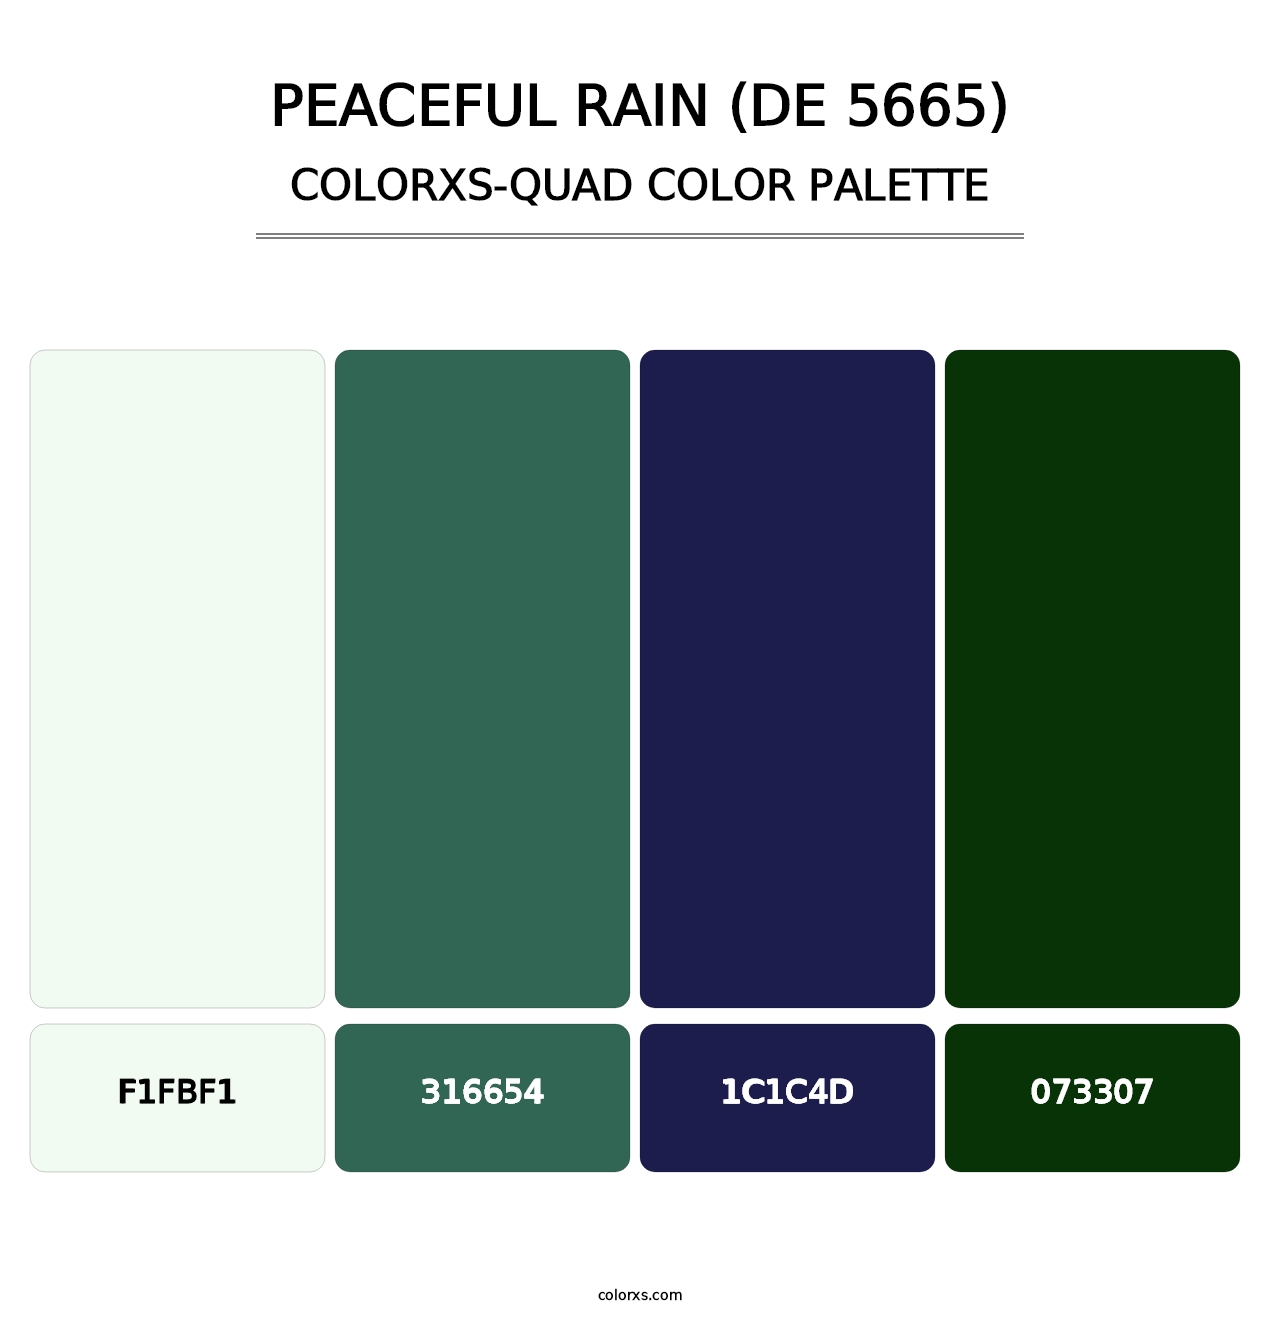 Peaceful Rain (DE 5665) - Colorxs Quad Palette